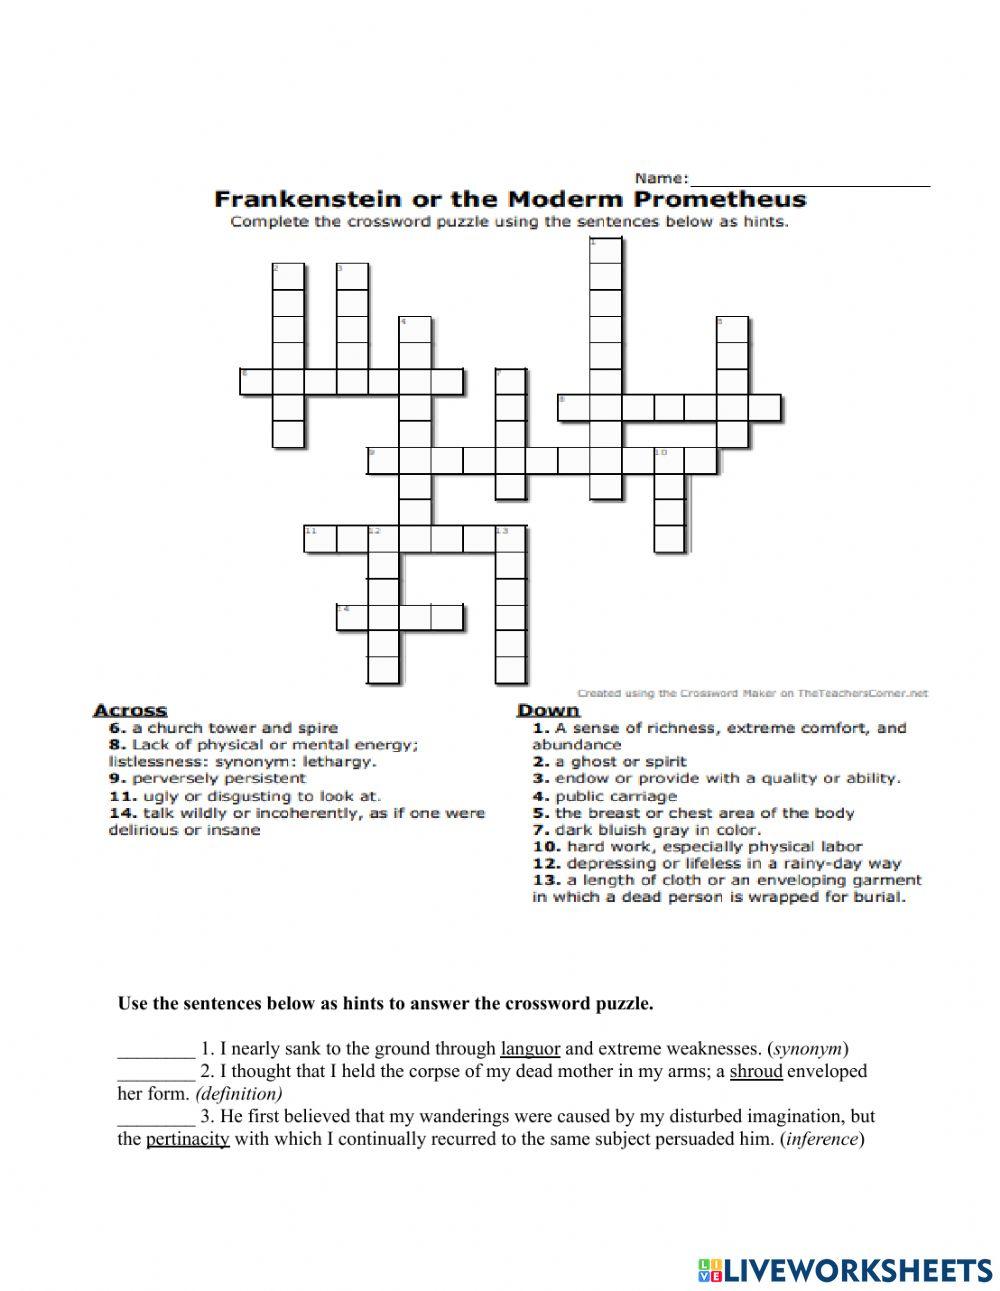 Crossword Puzzle for Frankenstein